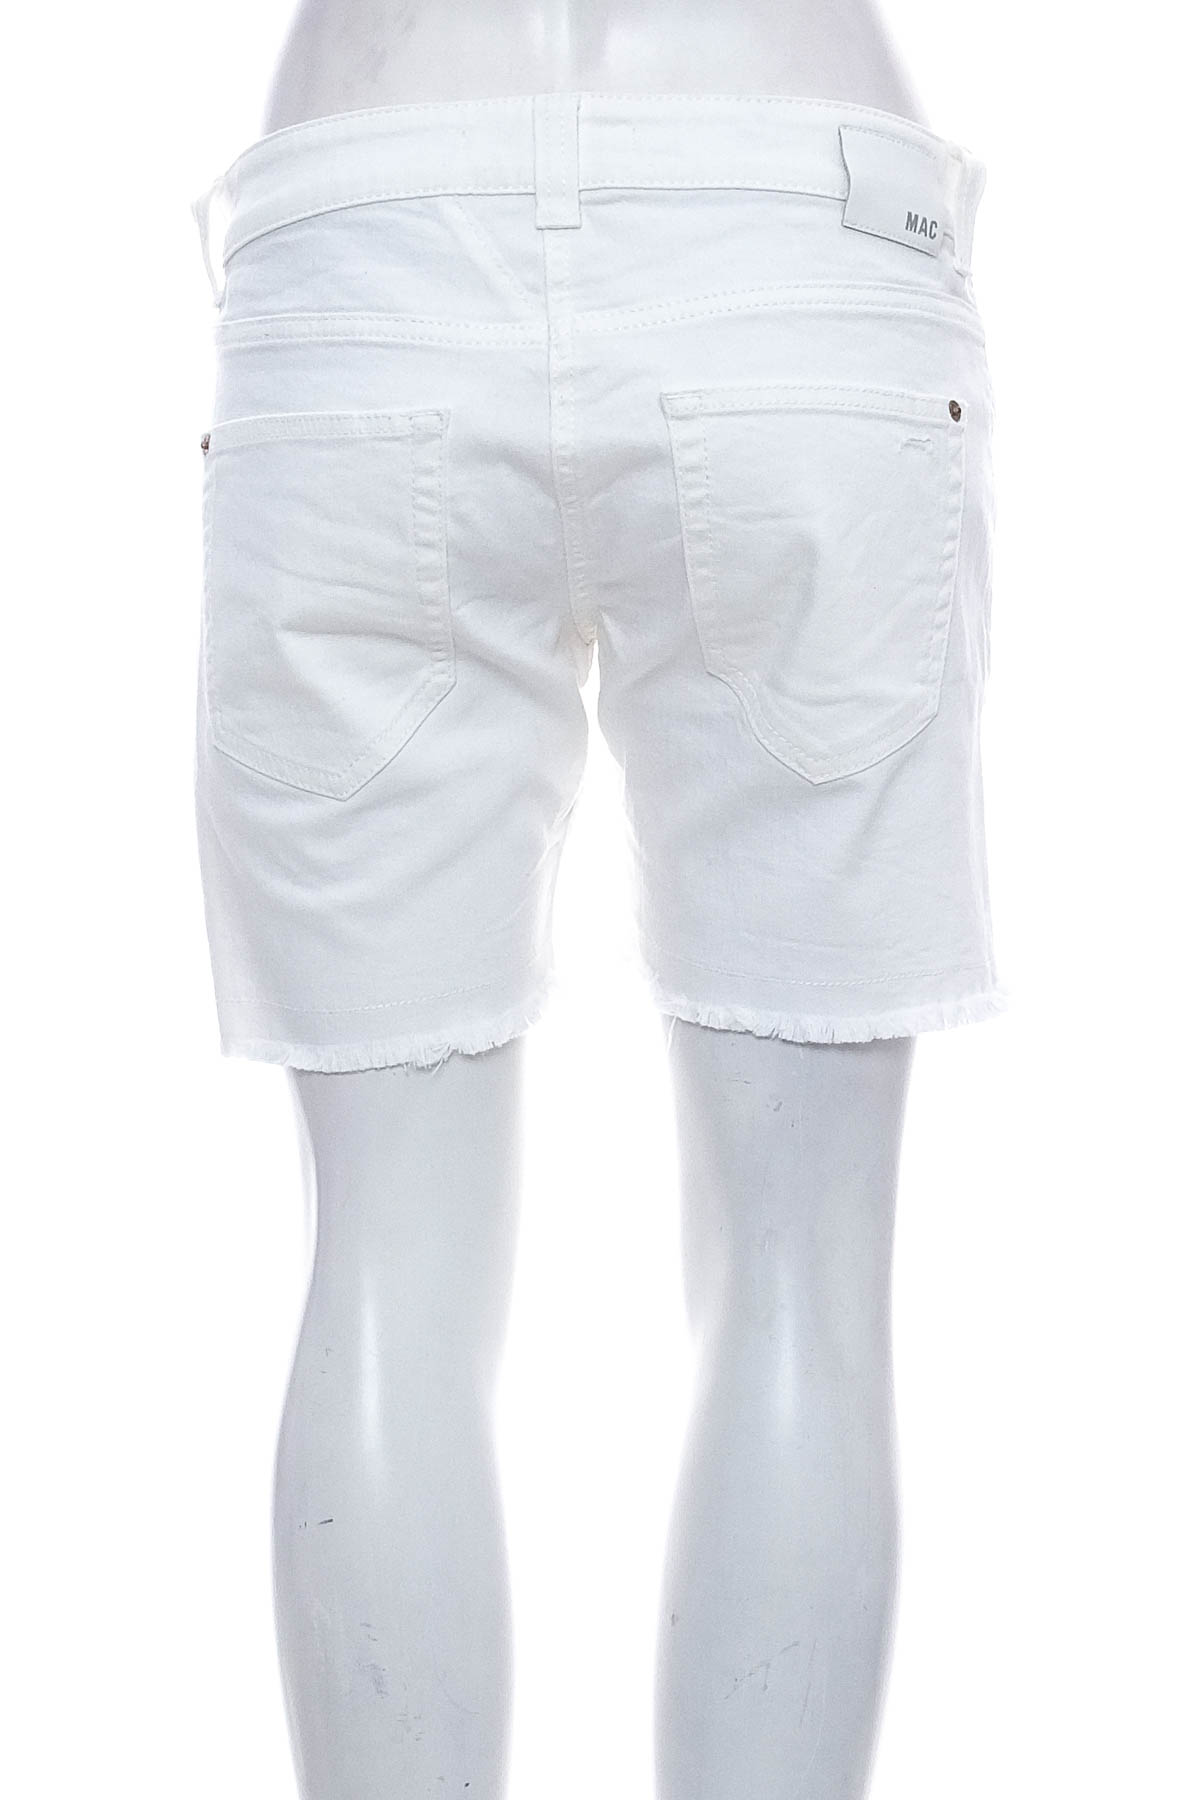 Female shorts - MAC - 1